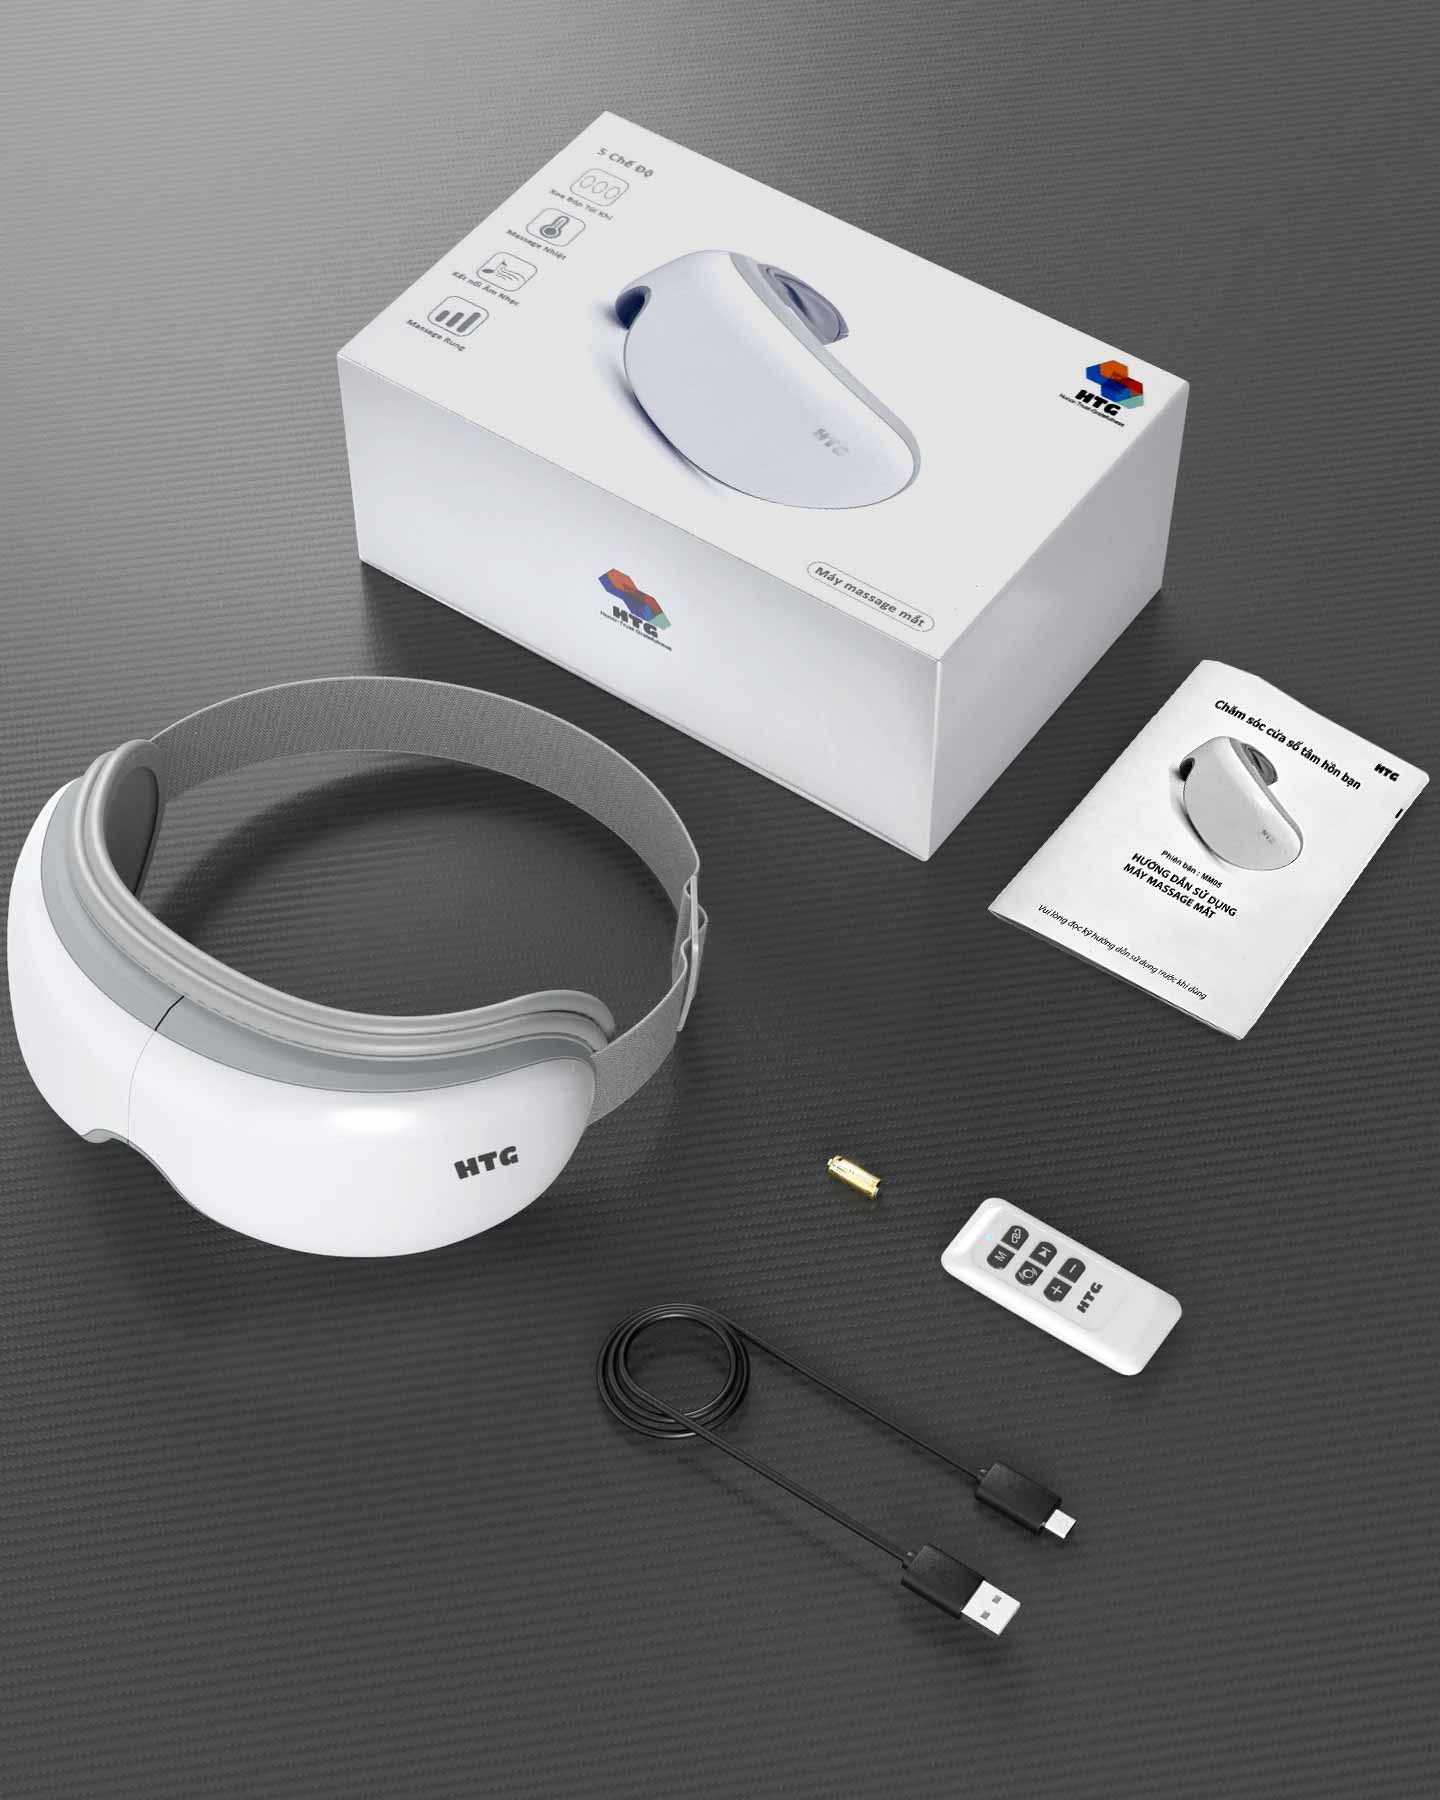 Máy massage mắt HTG MM05 tích hợp điều khiển từ xa, 5 in 1 phiên bản nâng cấp, 2 cấp độ xoa bóp mát xa tùy chỉnh tùy ý, rung tần số cao và nén nóng 42ºC graphene